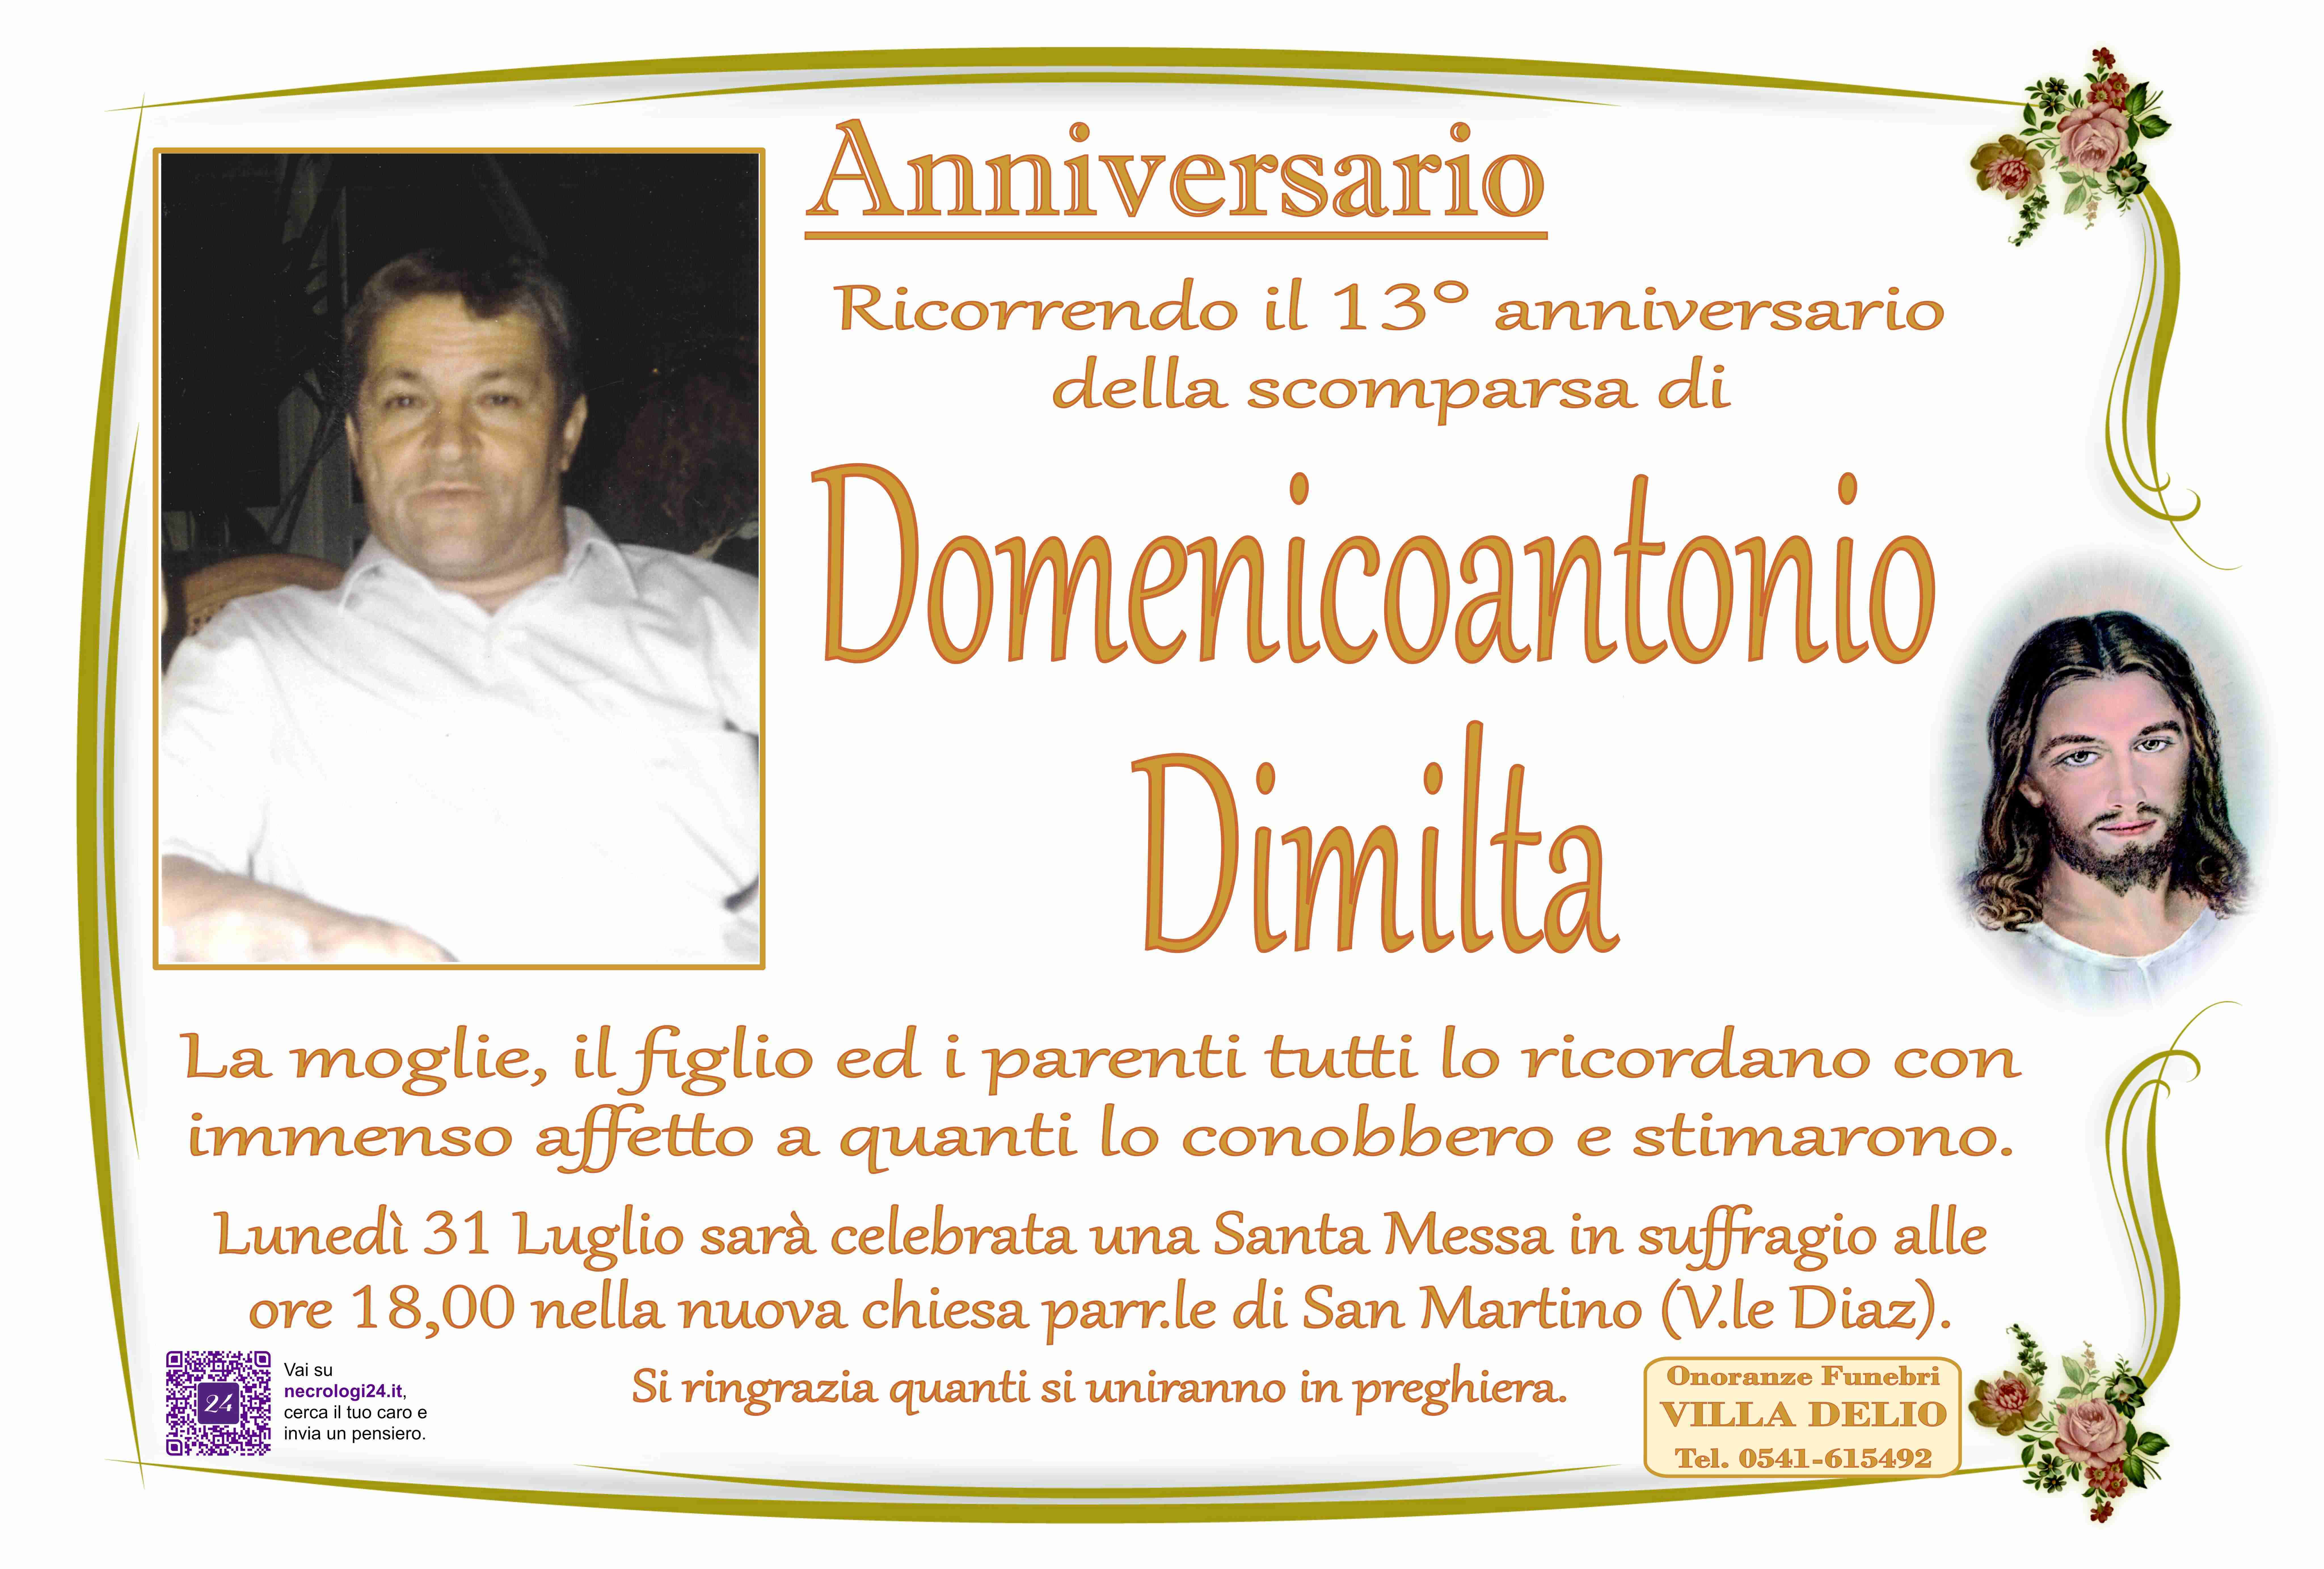 Domenicoantonio Dimilta